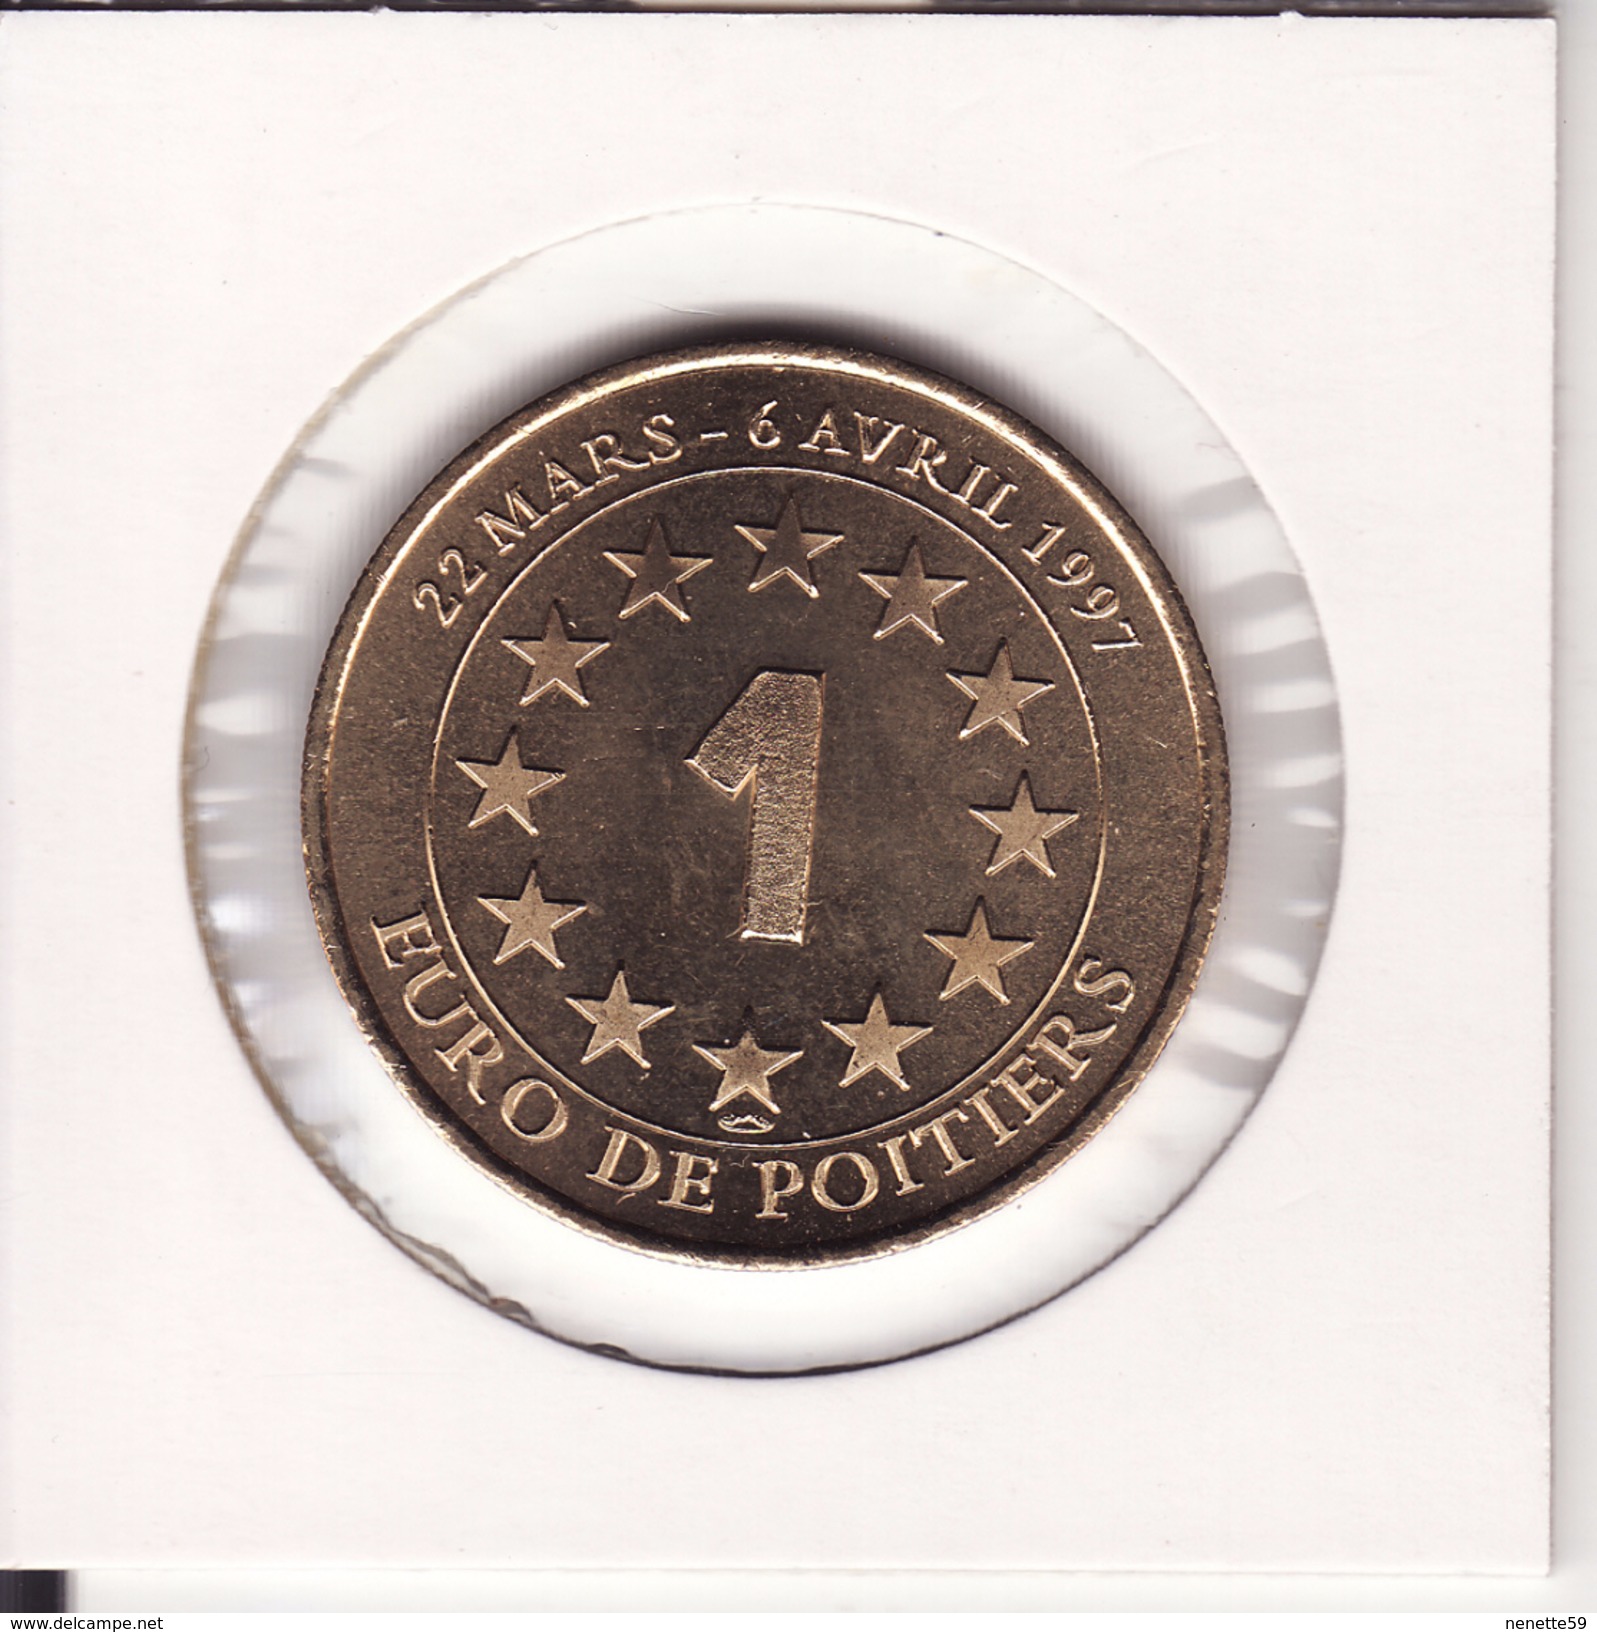 Médaille 1 Euro De POITIERS 1997 -- FUTUROSCOPE - Euros De Las Ciudades